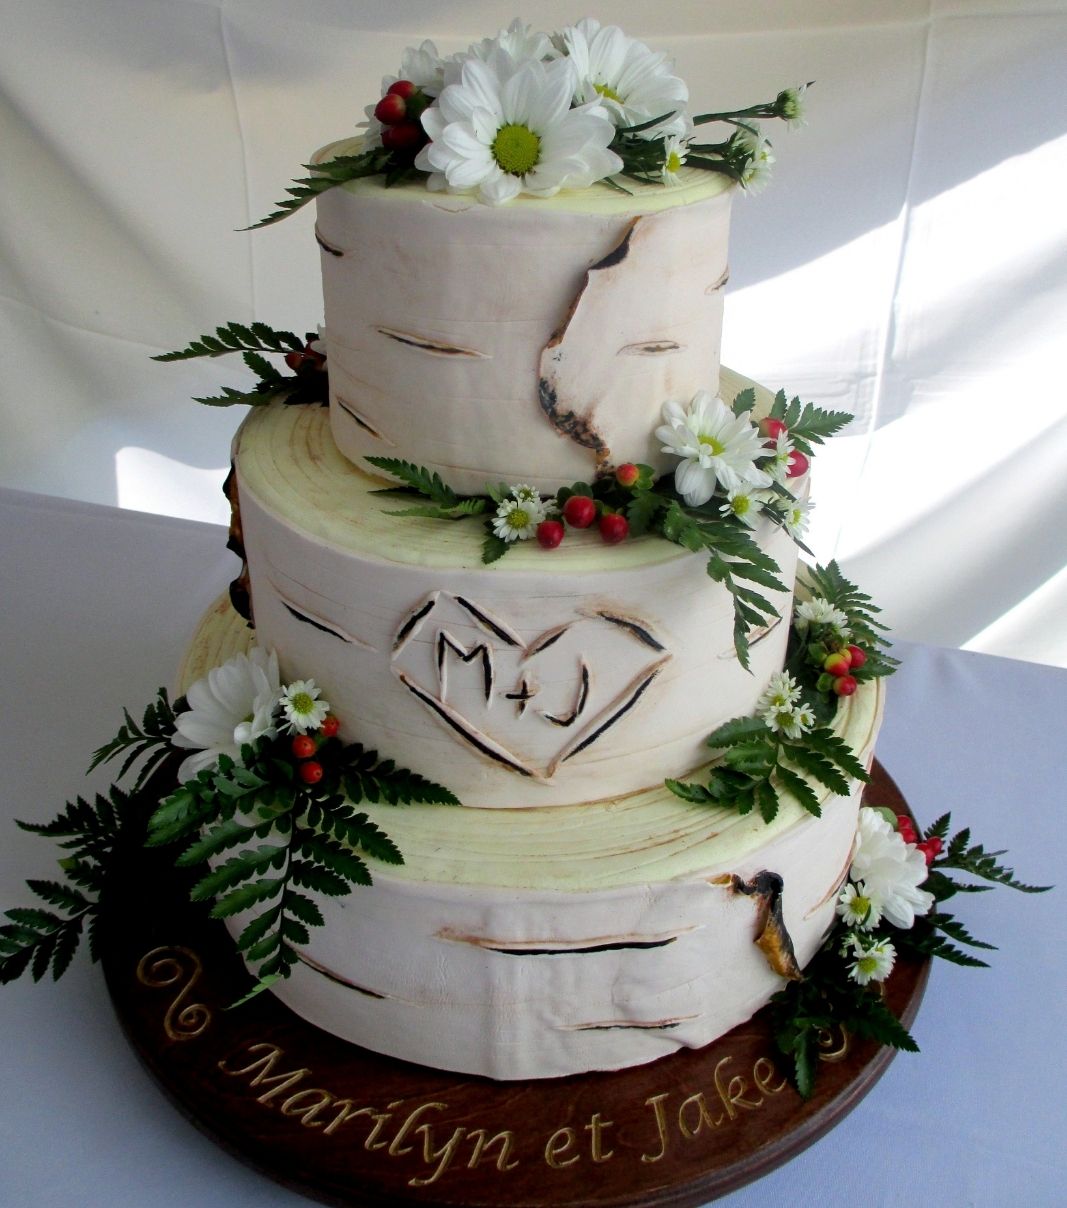 Gâteau de mariage de Marilyn et Jake: gâteau de 3 étages avec une couverture en pâte d'amande effet bouleau et décoré de fleurs fraîches.